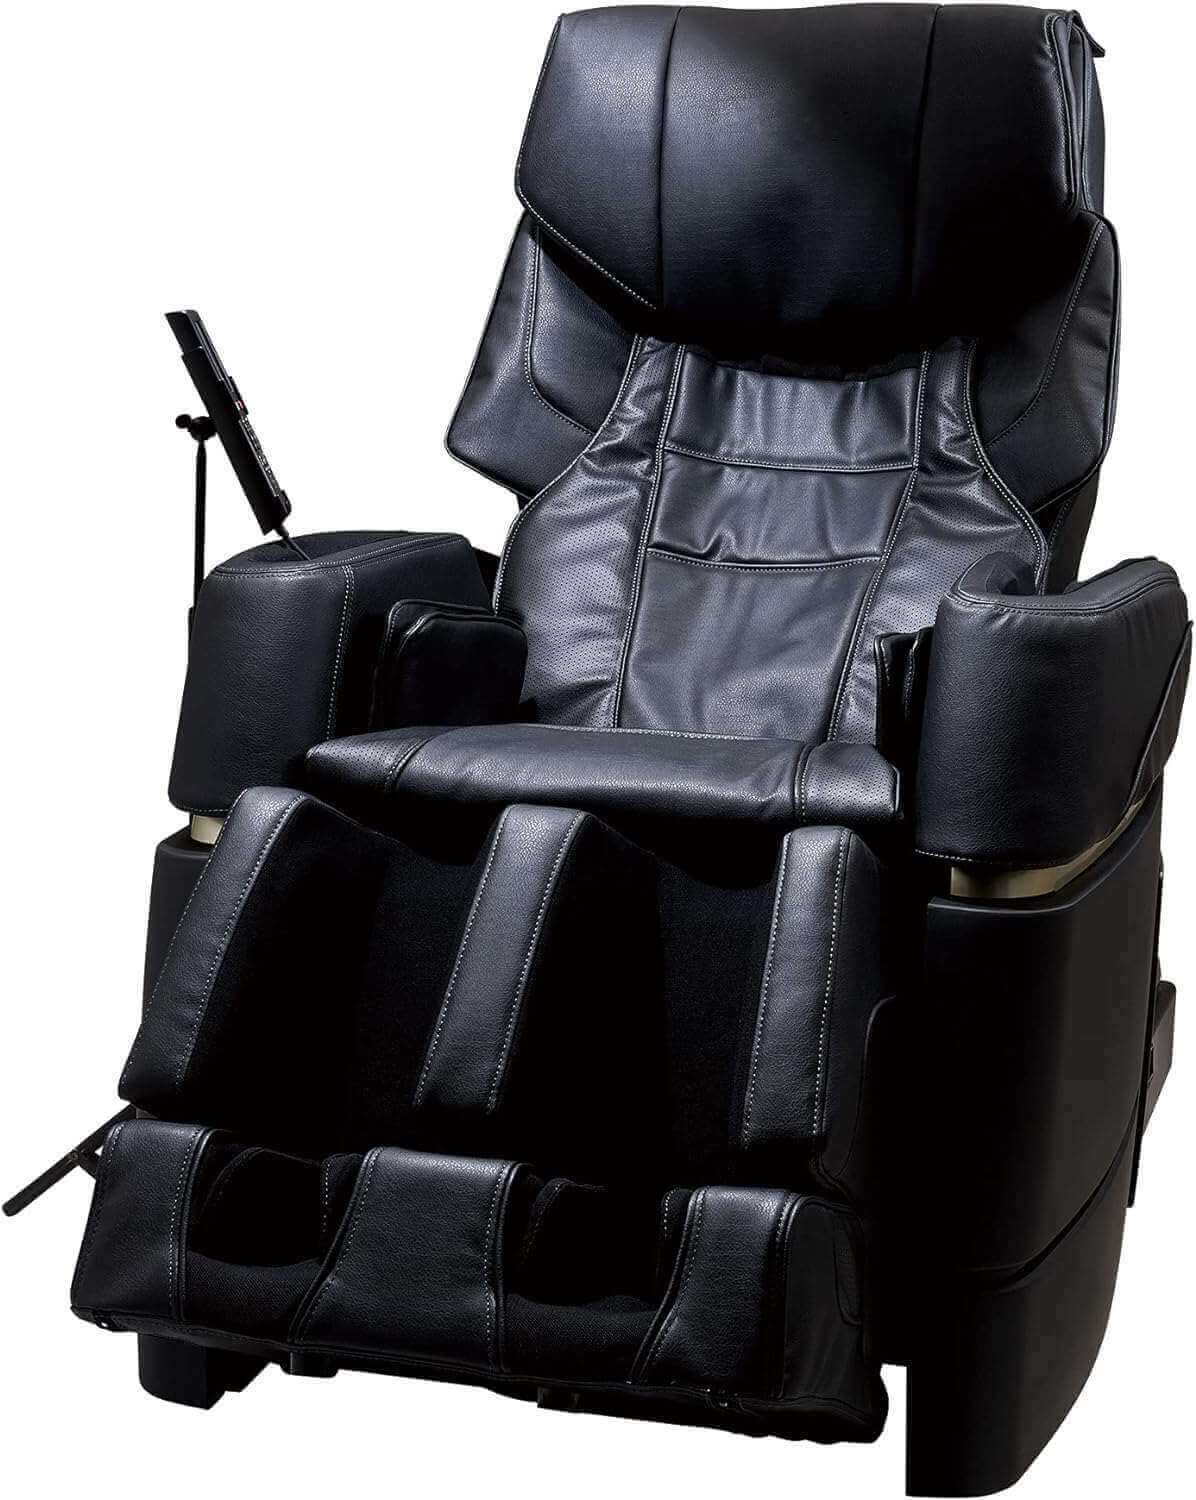 Synca Wellness JP970 - 4D Ultra Deep Tissue Massage Chair - Electric Massaging Chairs